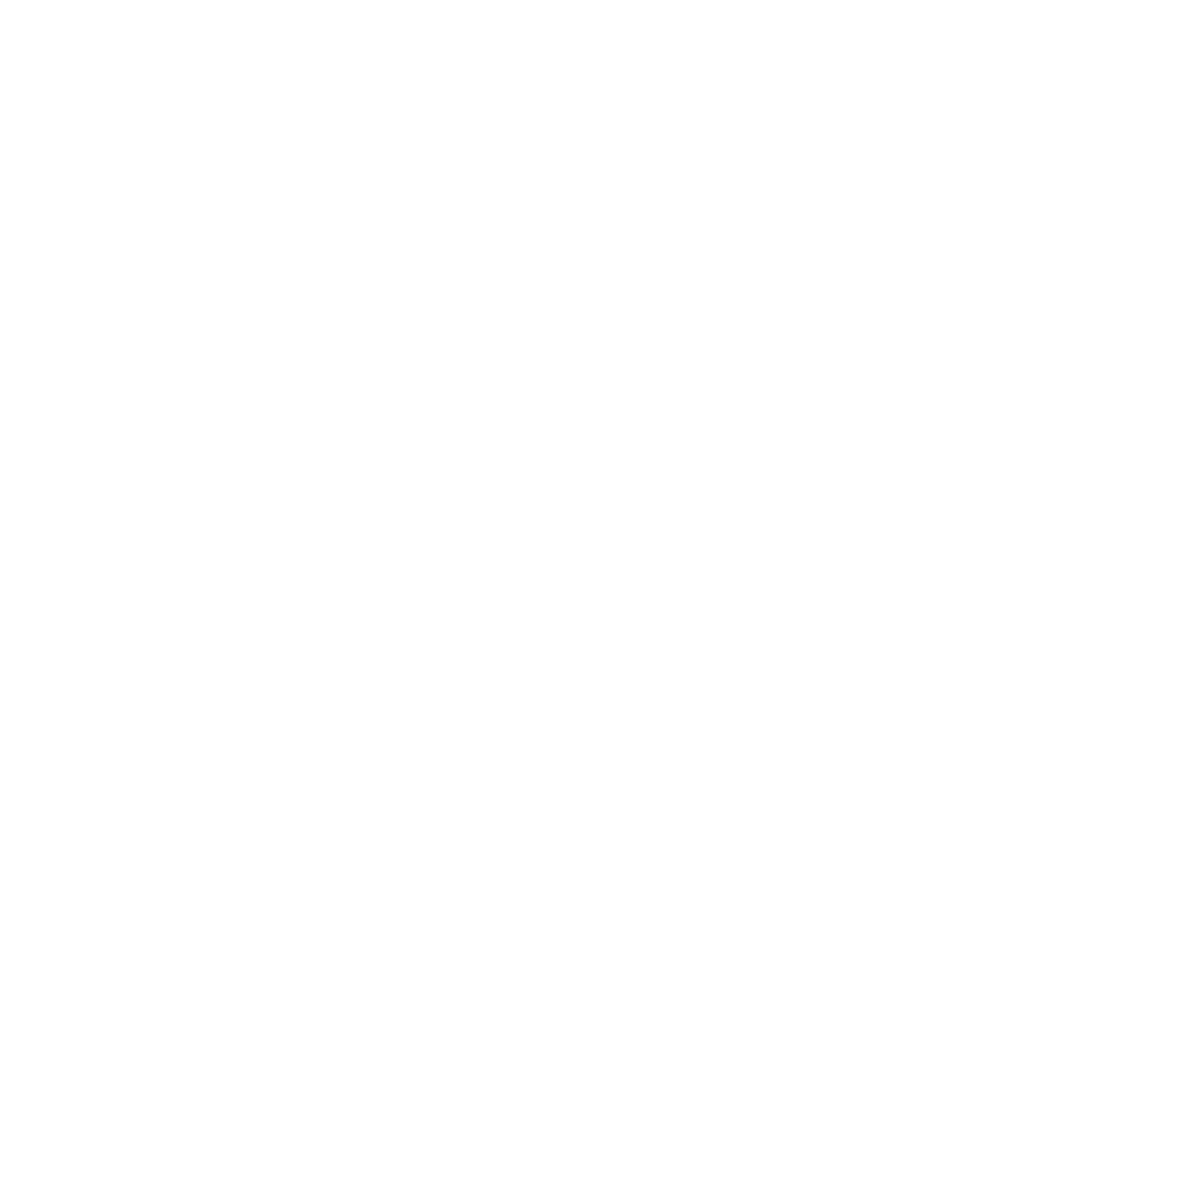 MURIA assessors